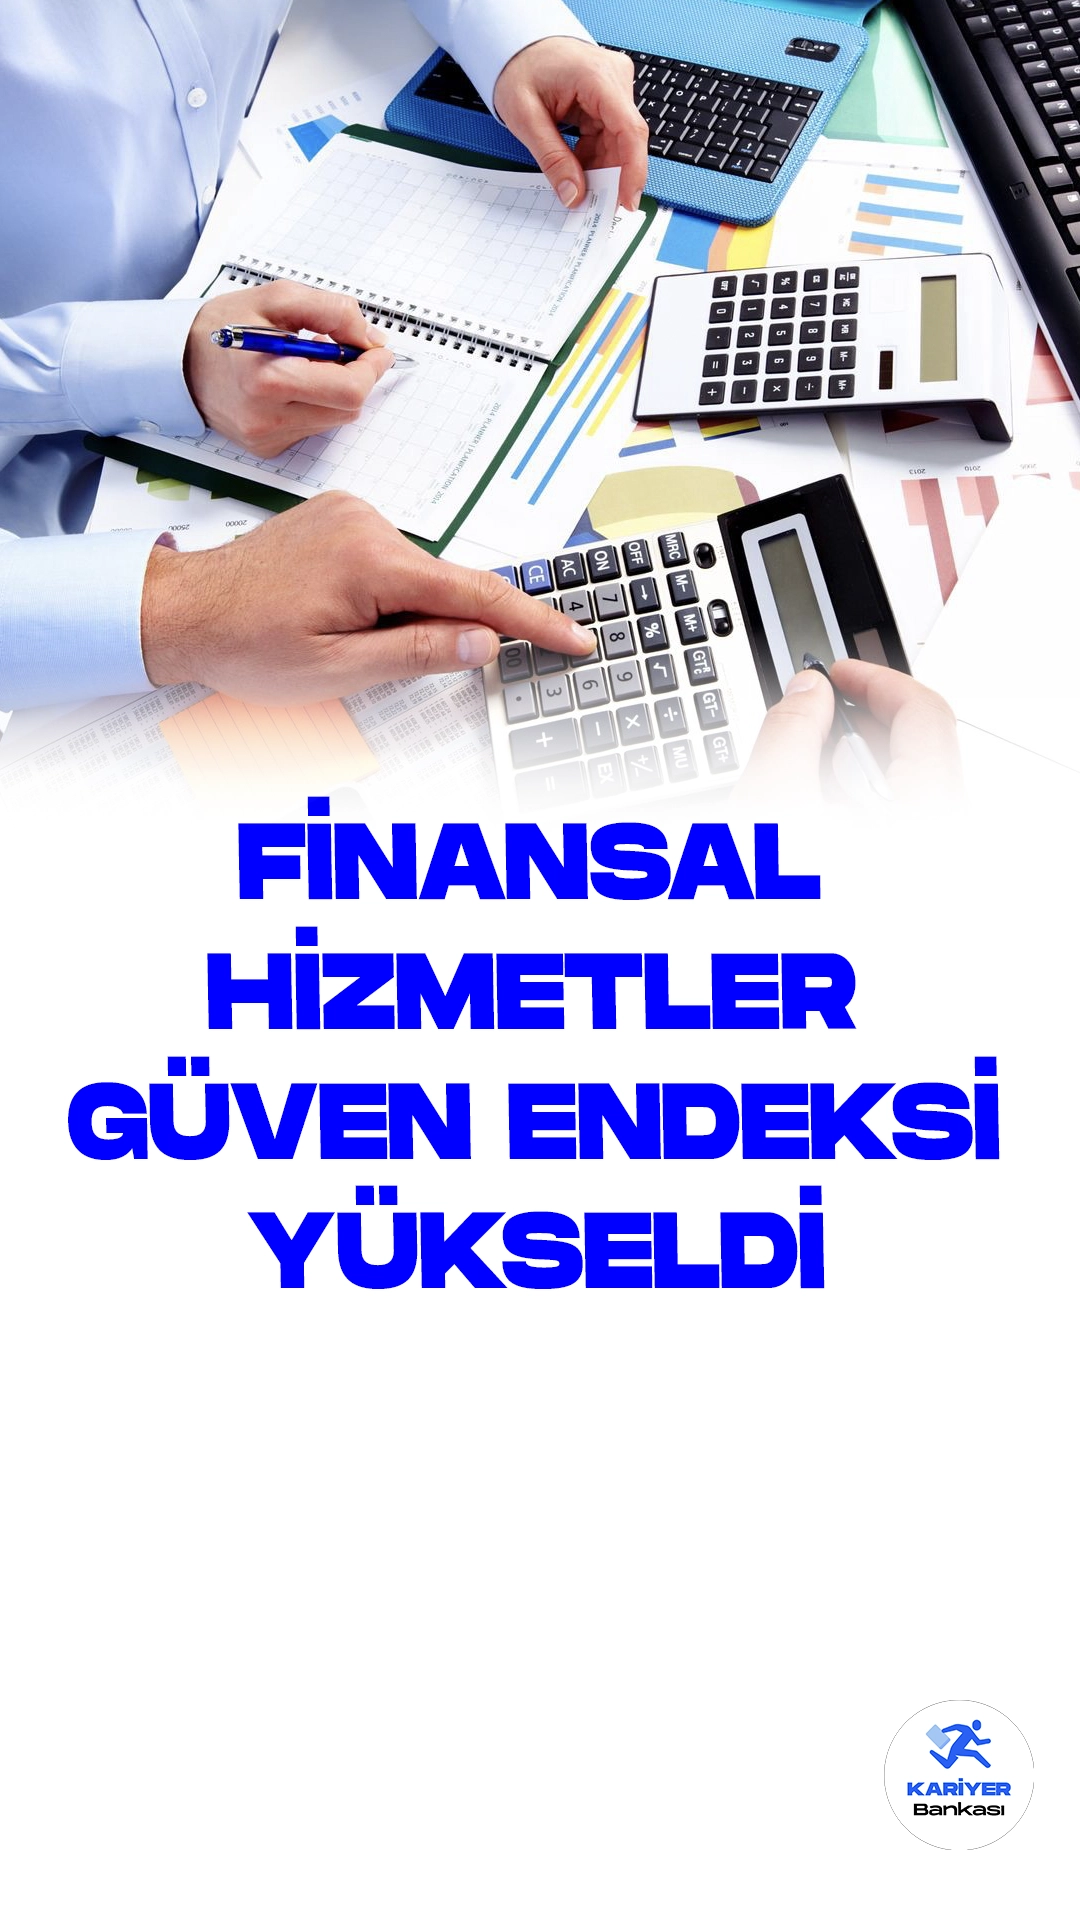 Finansal Hizmetler Güven Endeksi Eylül Ayında Yükseldi.Türkiye Cumhuriyet Merkez Bankası (TCMB), Eylül ayına ilişkin Finansal Hizmetler İstatistikleri ve Finansal Hizmetler Güven Endeksi'ni açıkladı. Sonuçlar, finans sektöründeki güvenin Eylül ayında arttığını gösteriyor.